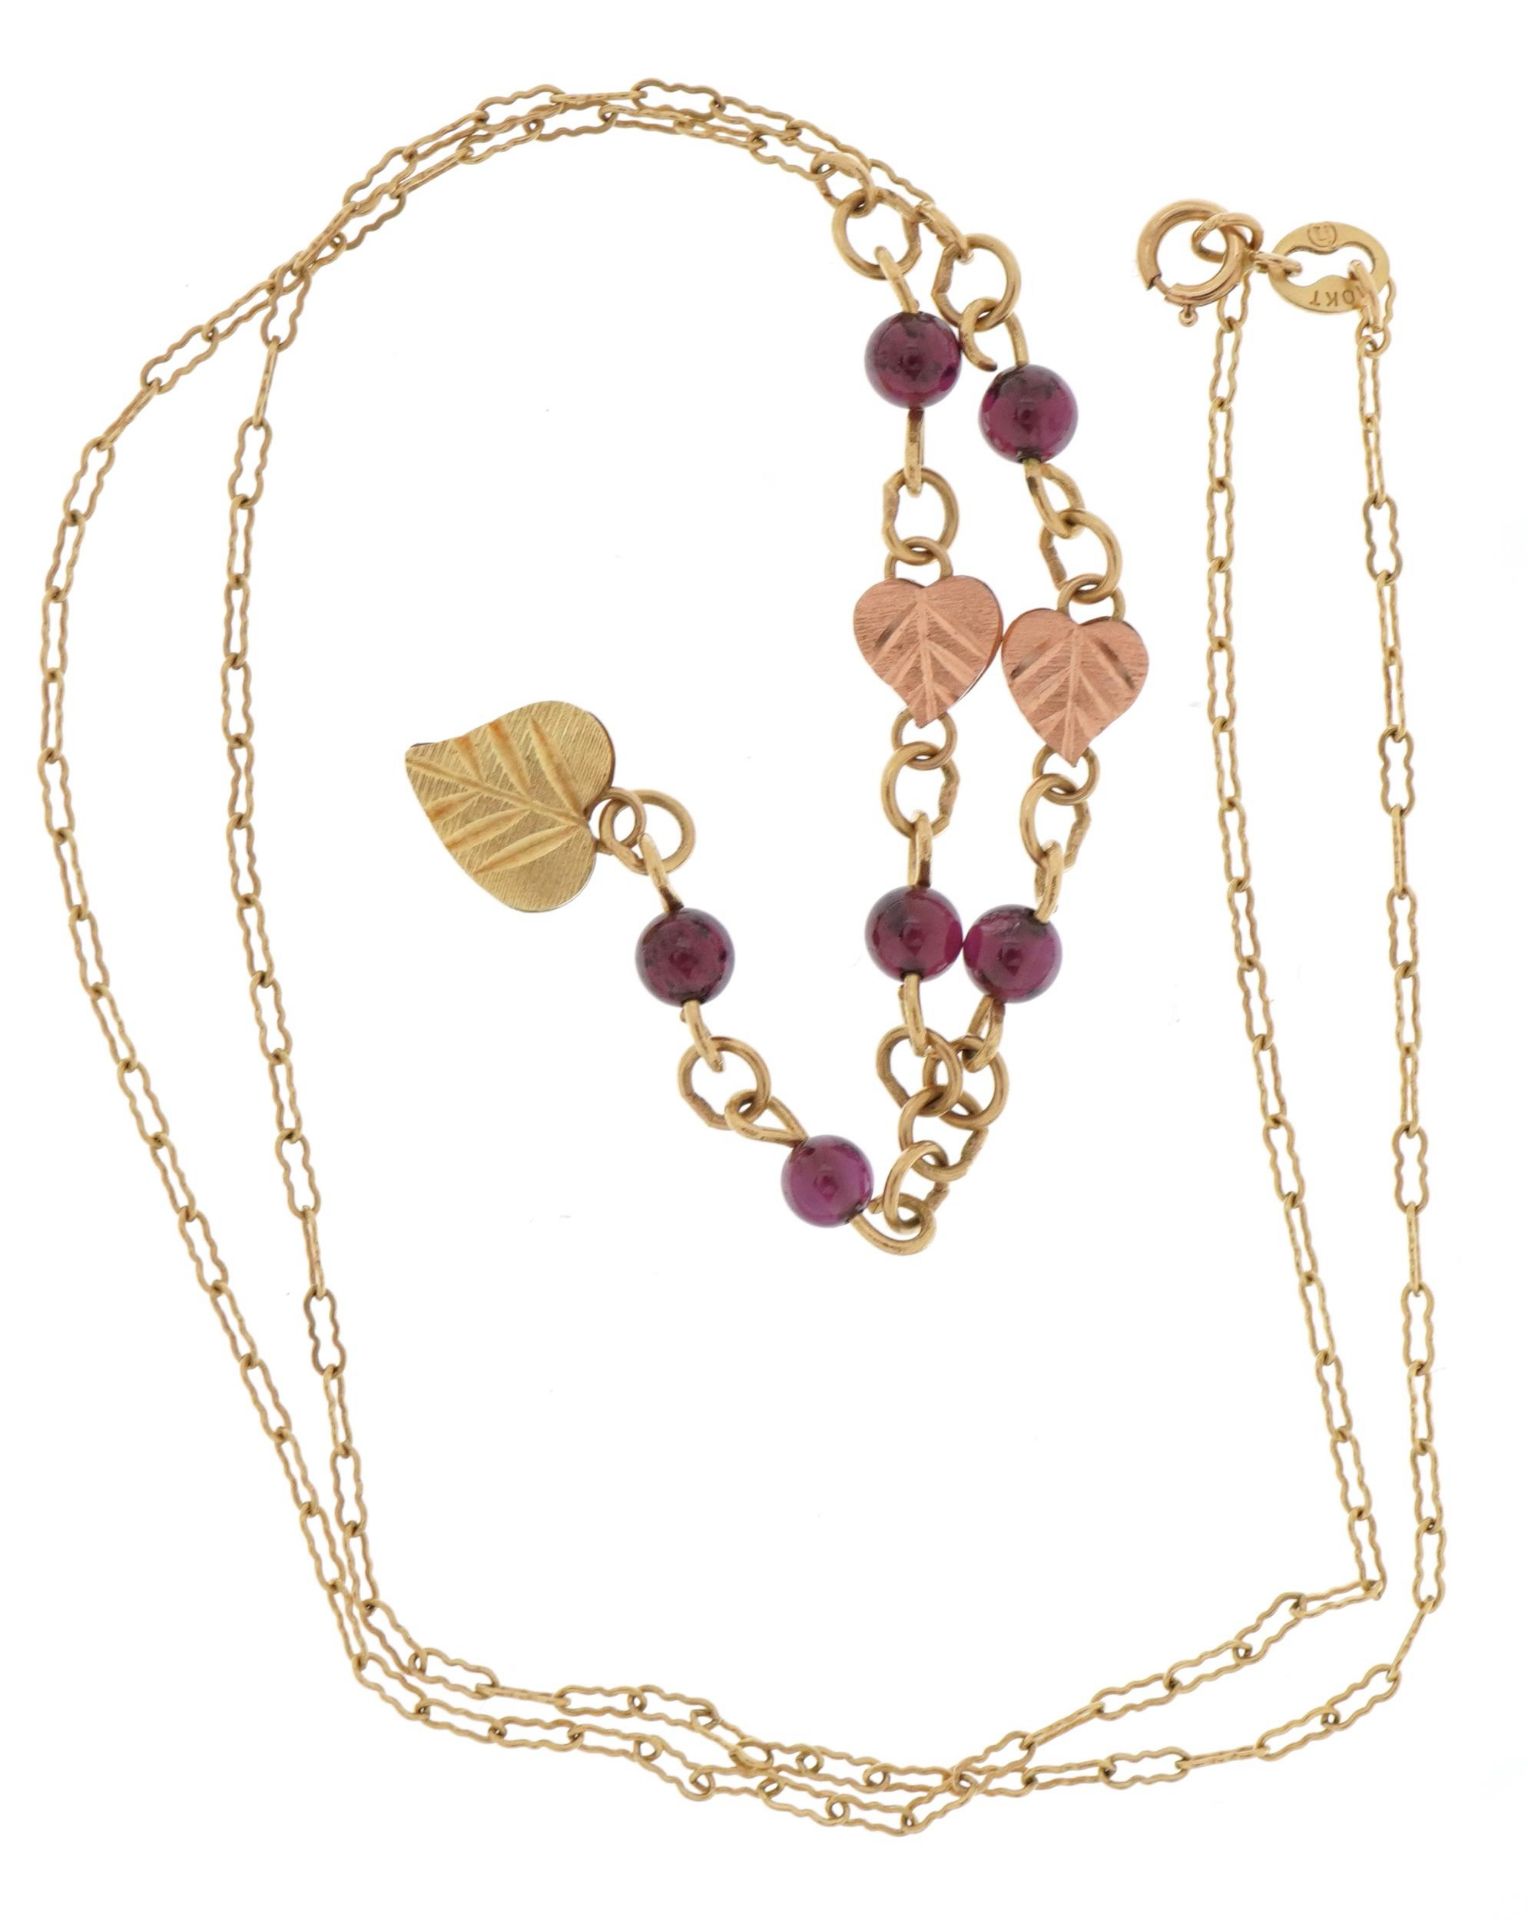 Manner of Black Hills, 9ct two tone gold garnet leaf design necklace, 44cm in length, 3.4g - Image 3 of 3